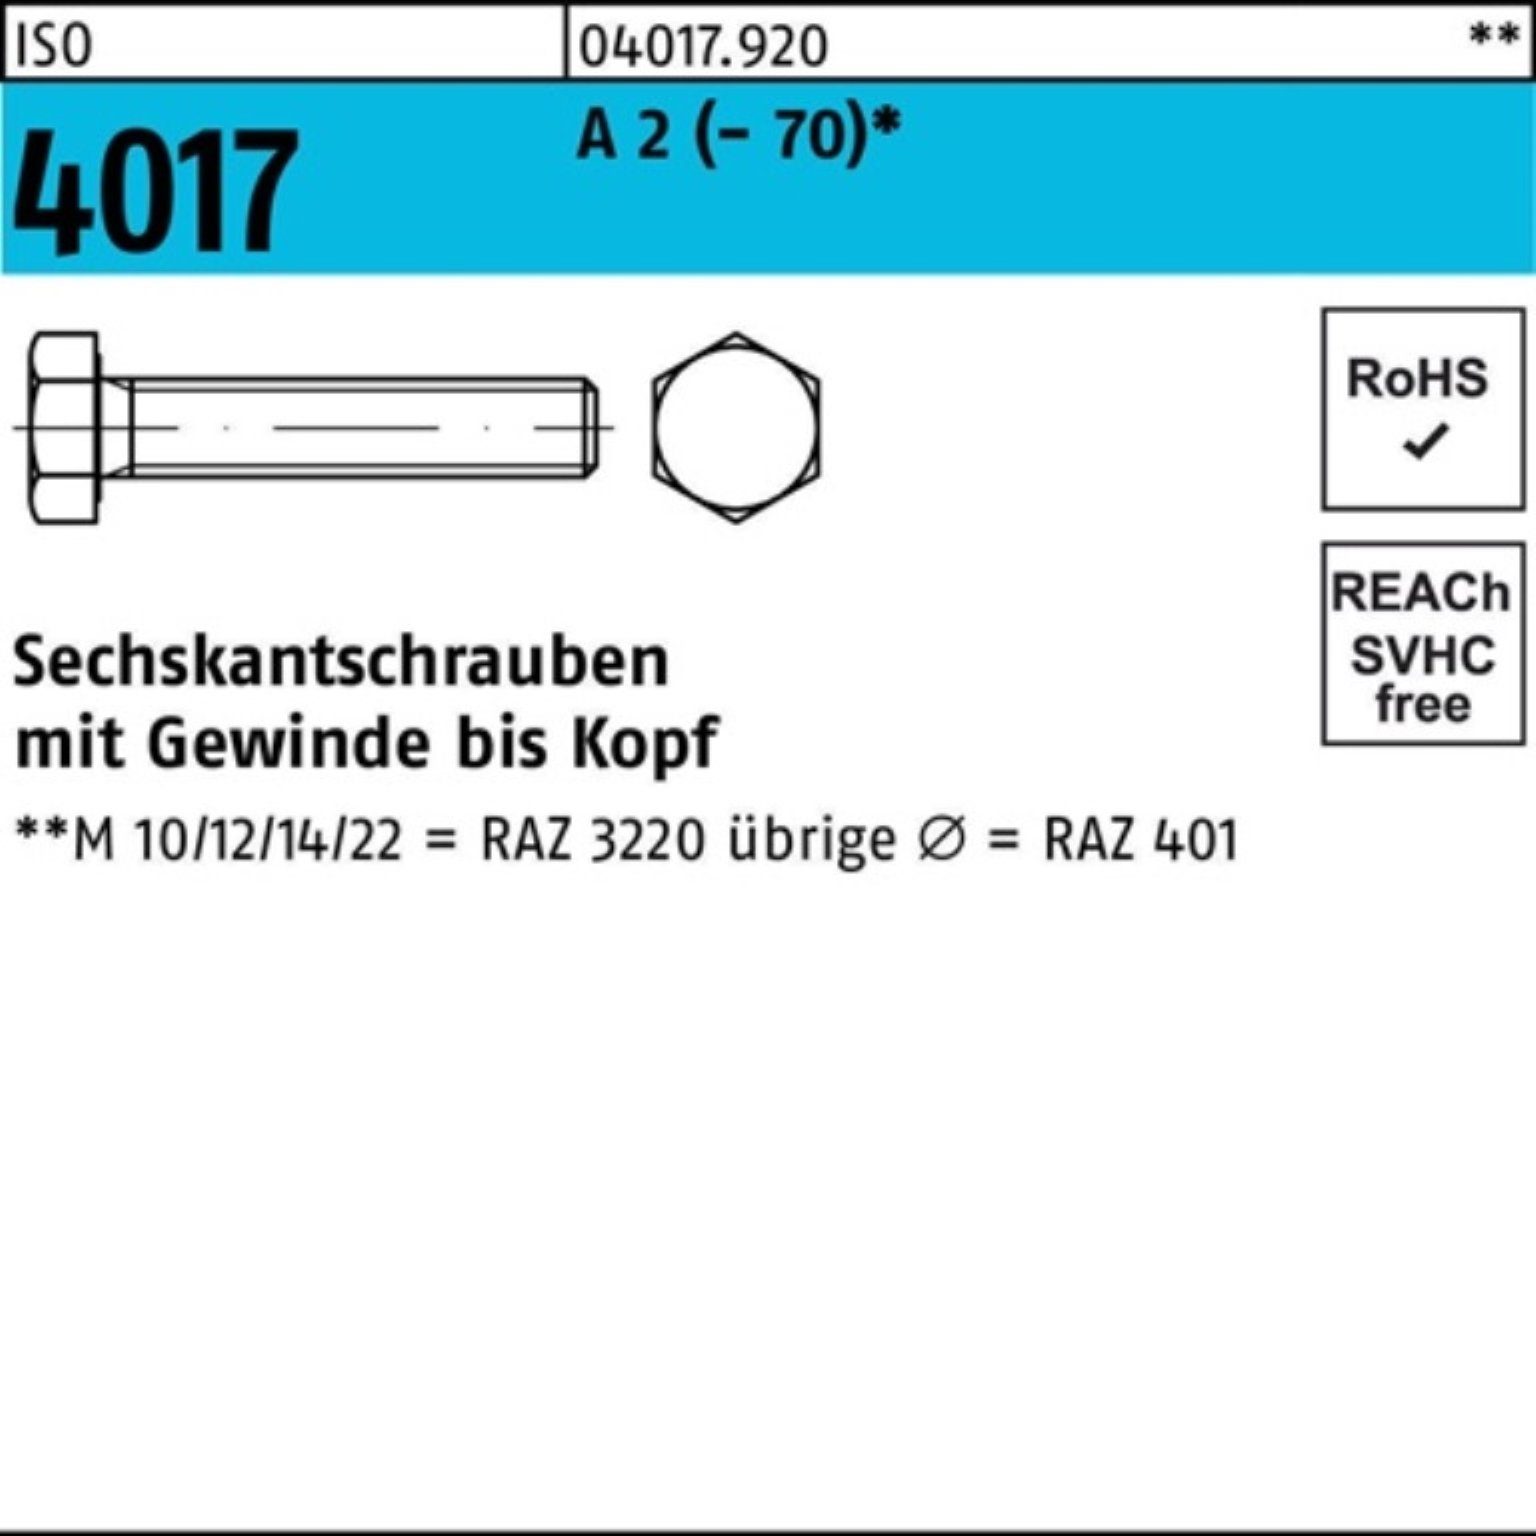 Bufab Sechskantschraube 500er Pack Sechskantschraube ISO 4017 VG M5x 18 A 2 (70) 500 Stück